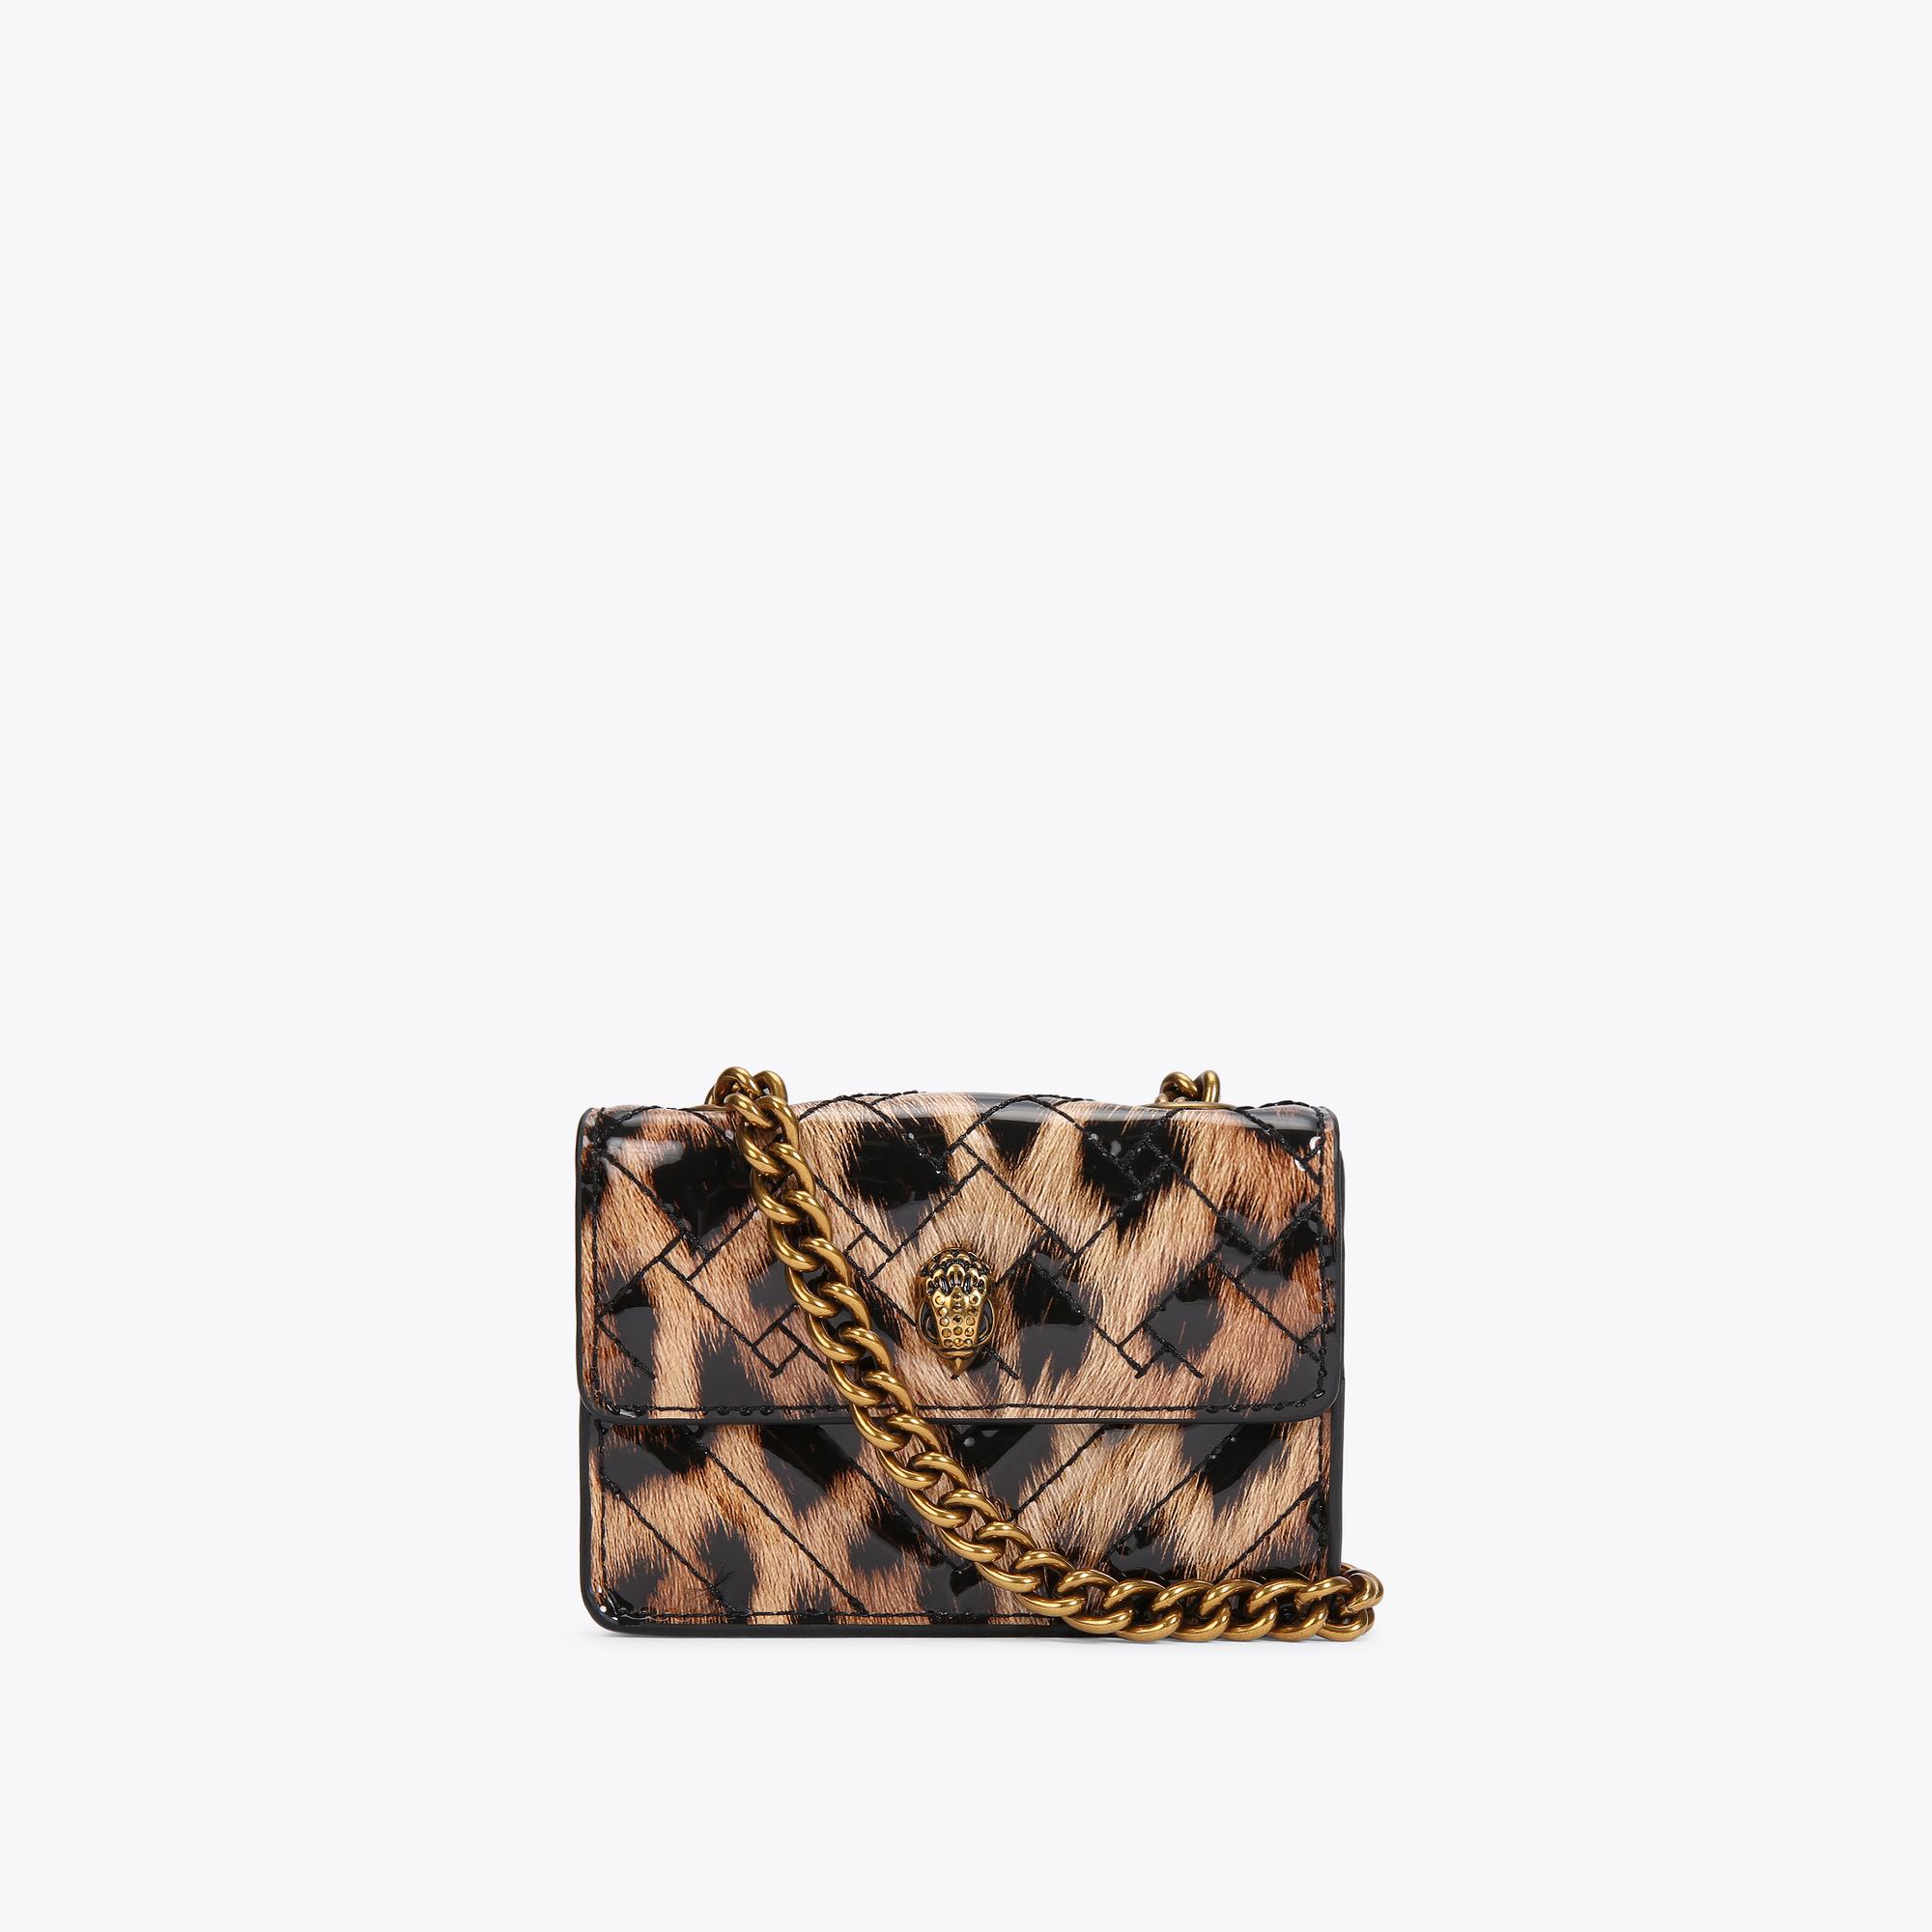 Kurt Geiger London Mini Kensington Leopard Print Convertible Crossbody Bag